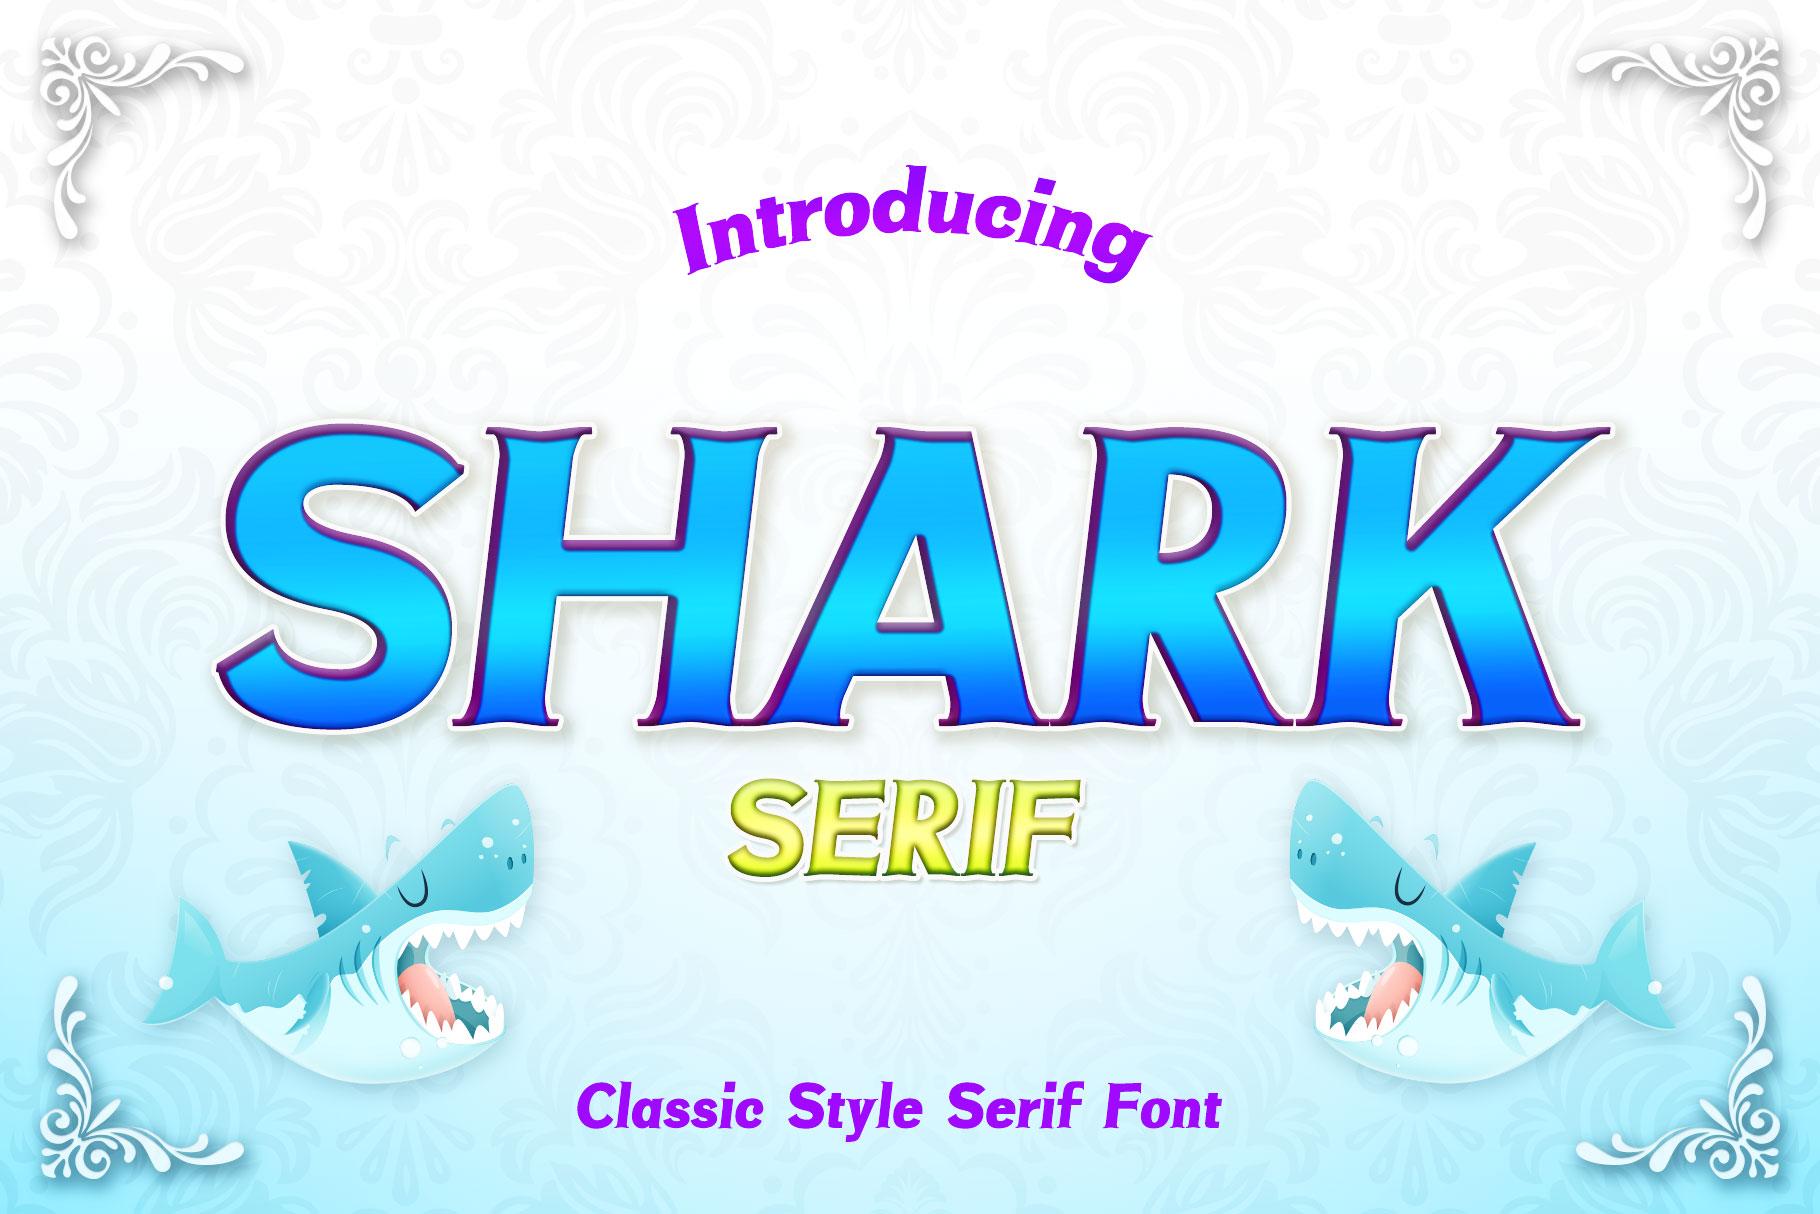 Shark Font